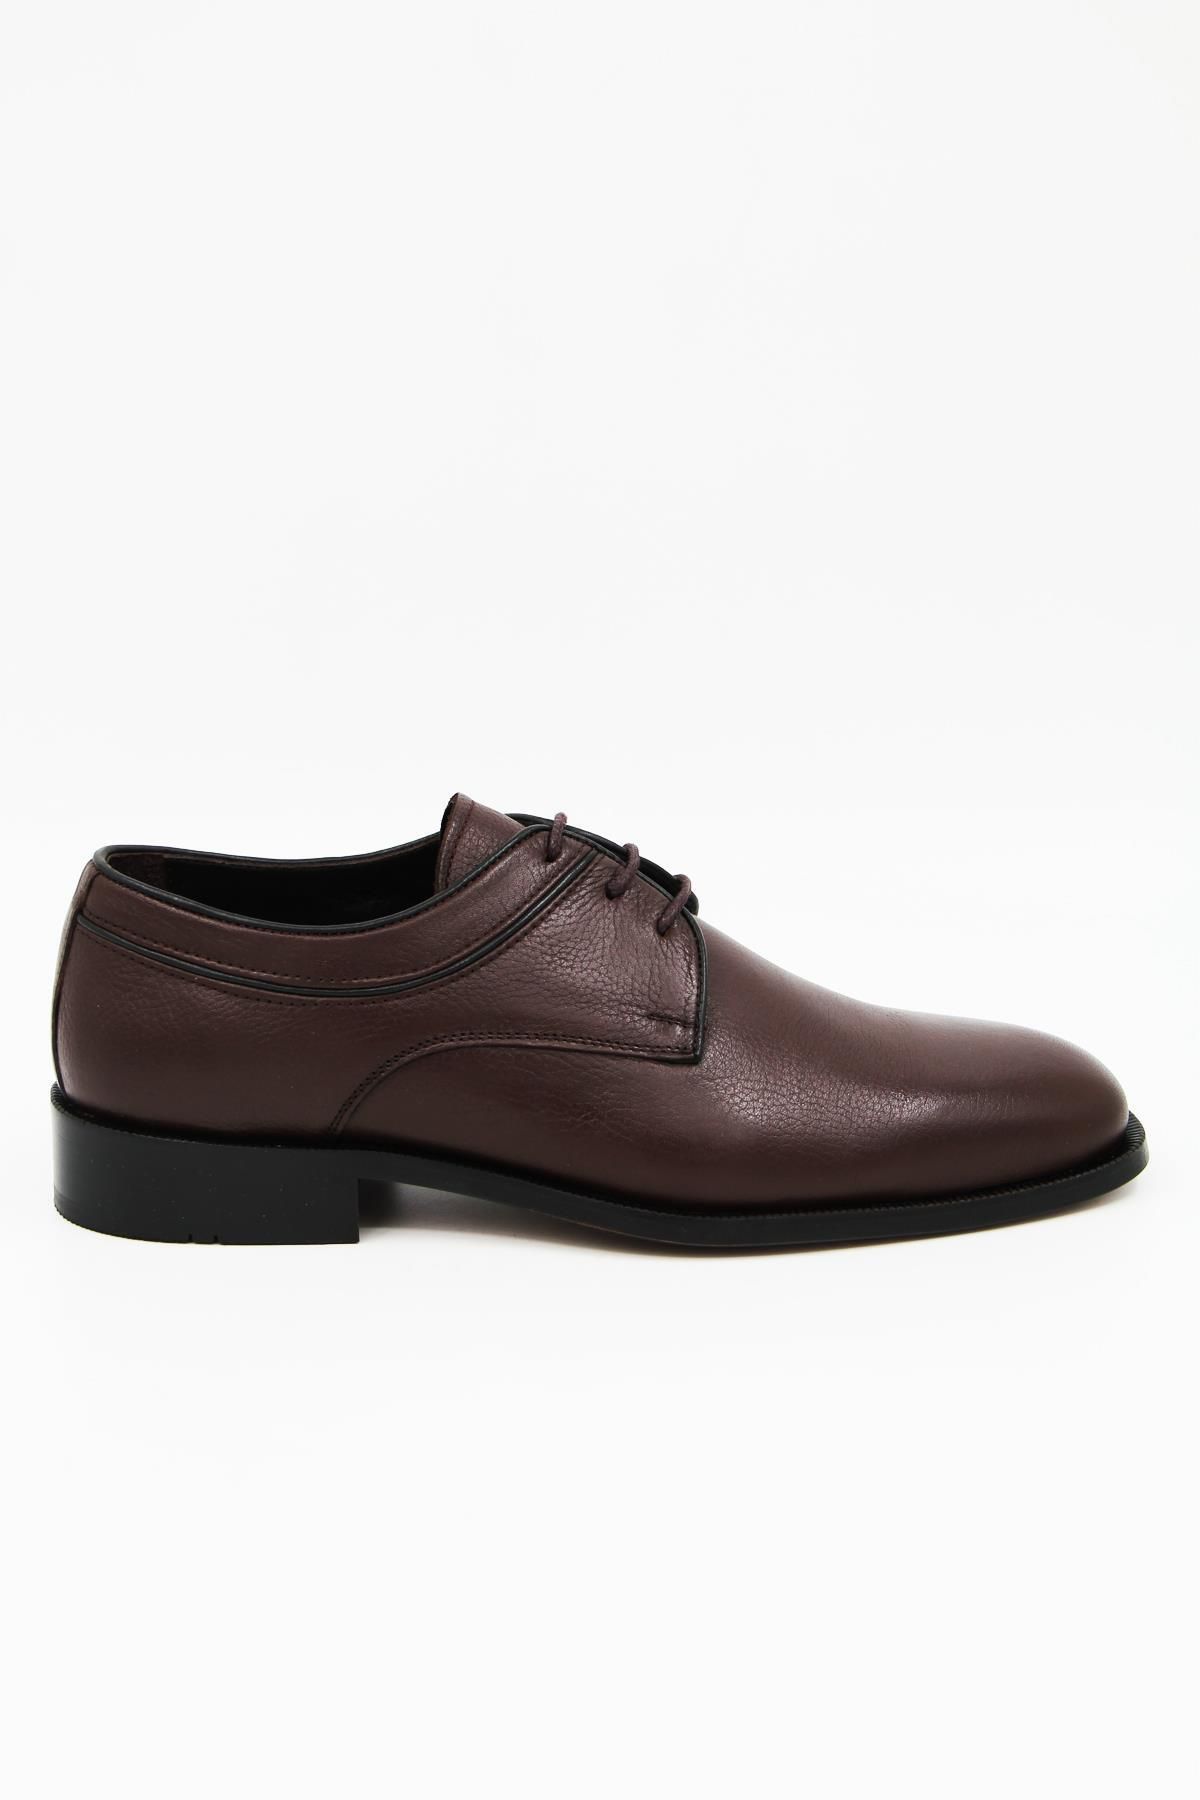 DANACI 9641 Erkek Klasik Ayakkabı - Kahverengi